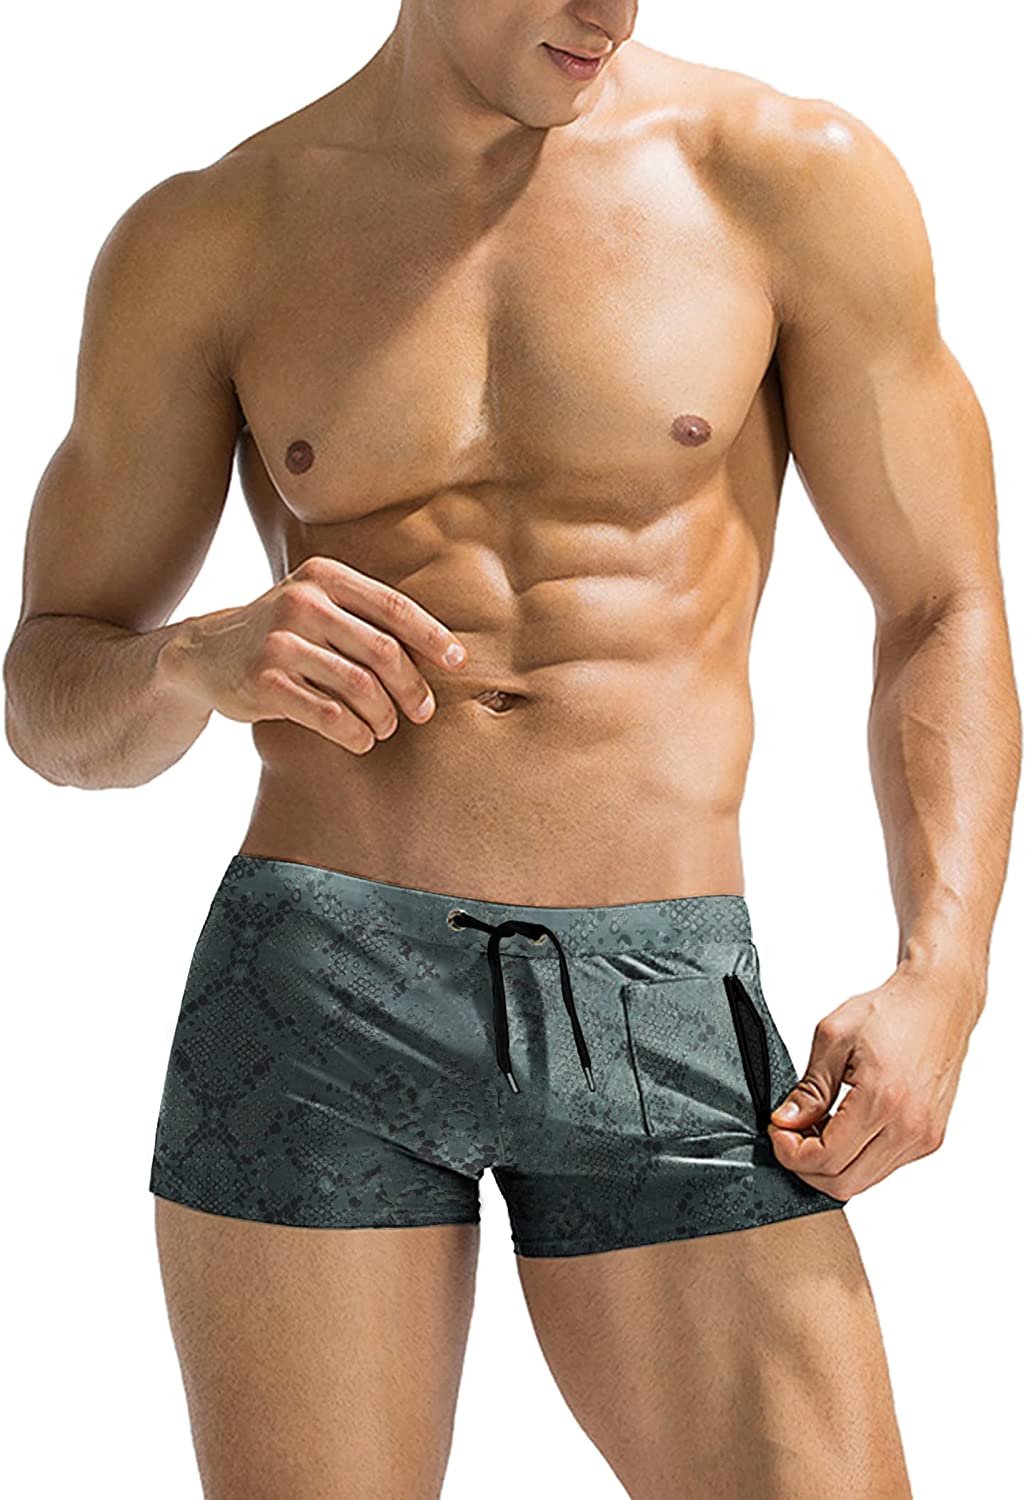 Swimwear for Men - Swimming Trunks & Shorts